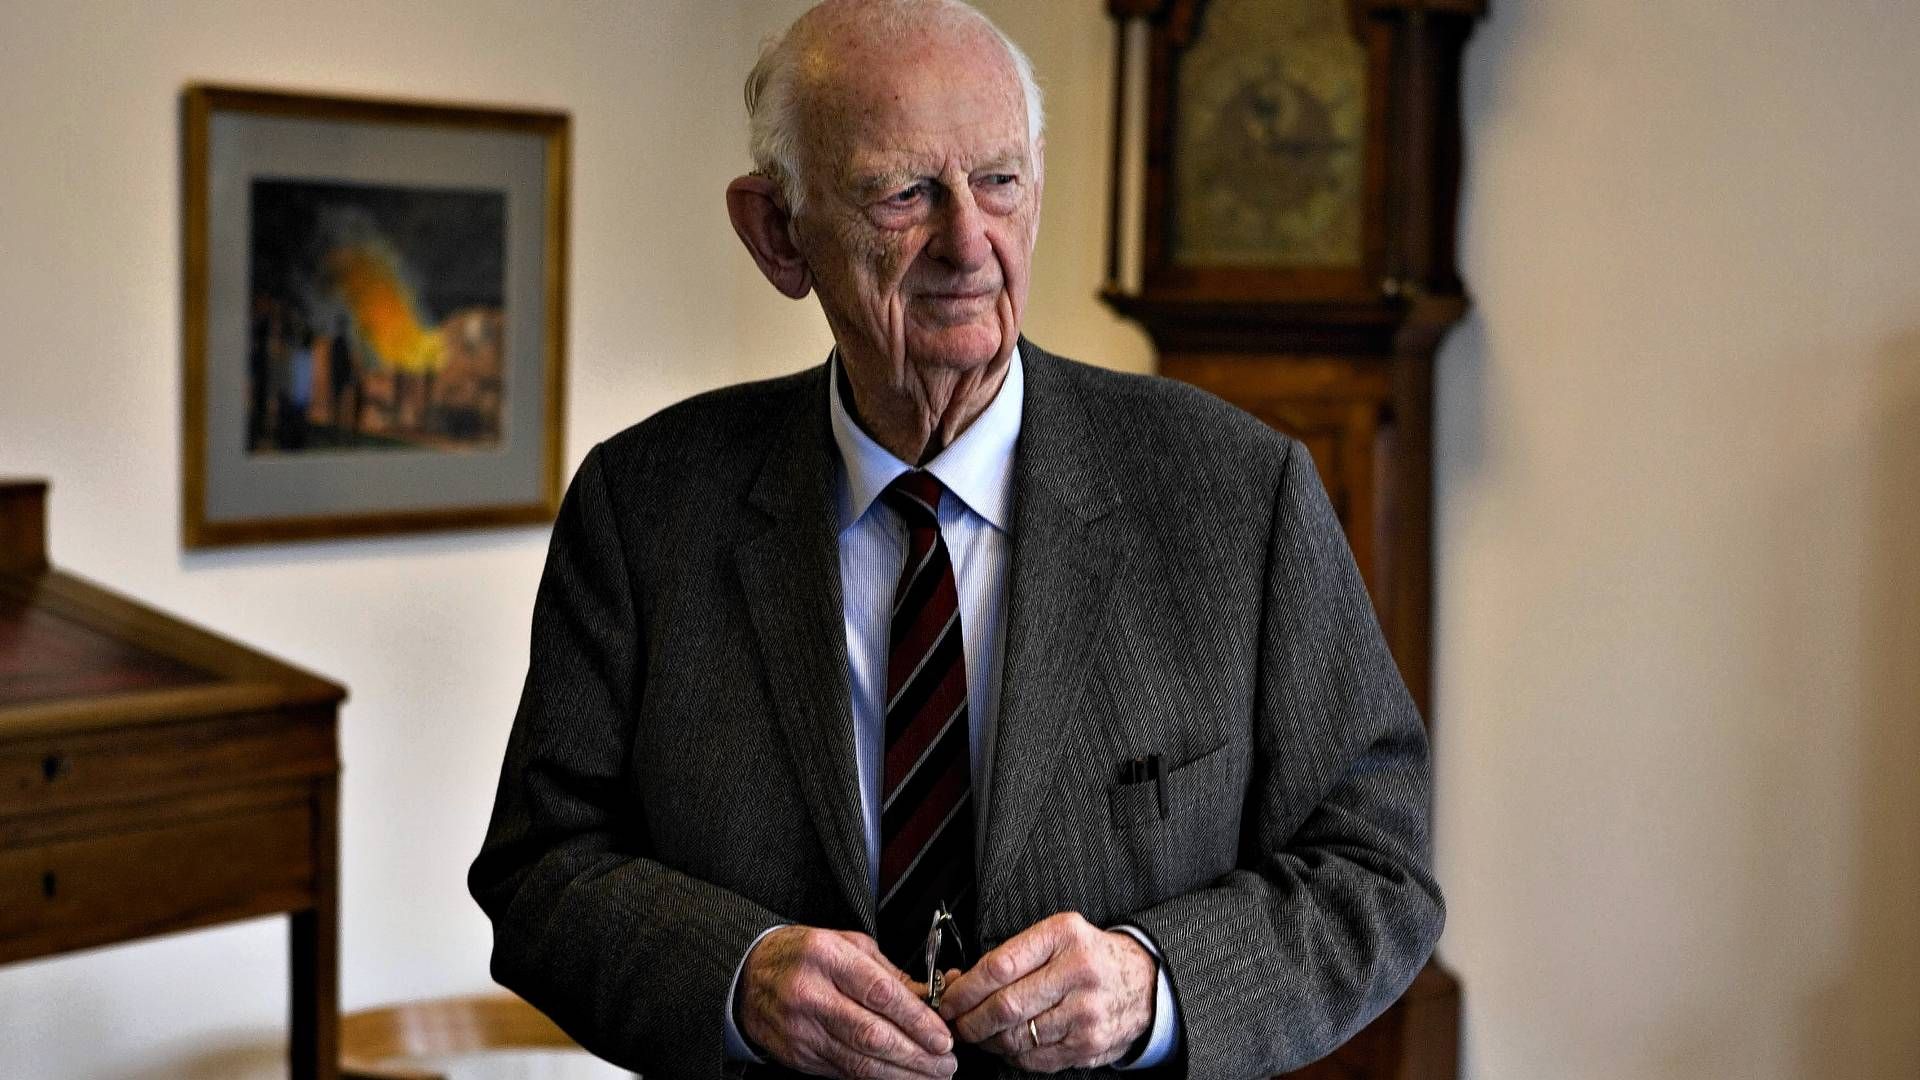 Afdøde Haldor Topsøe blev 99 år. Han efterlod en veldrevet virksomhed til sin familie. | Foto: Thomas Larsen